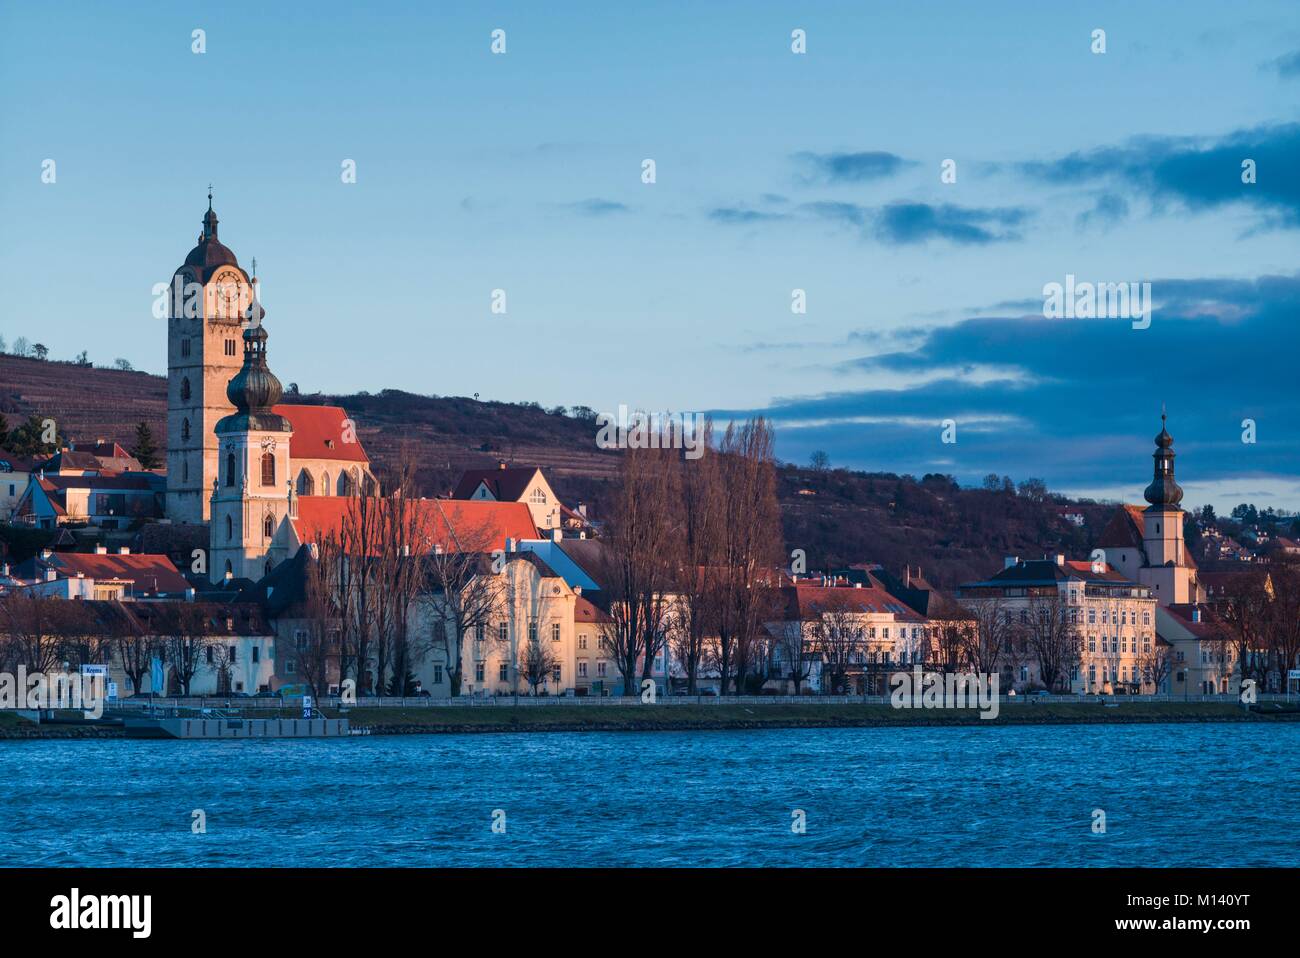 Austria, Lower Austria, Stein an der Donau, town view from the Danube River, dawn Stock Photo